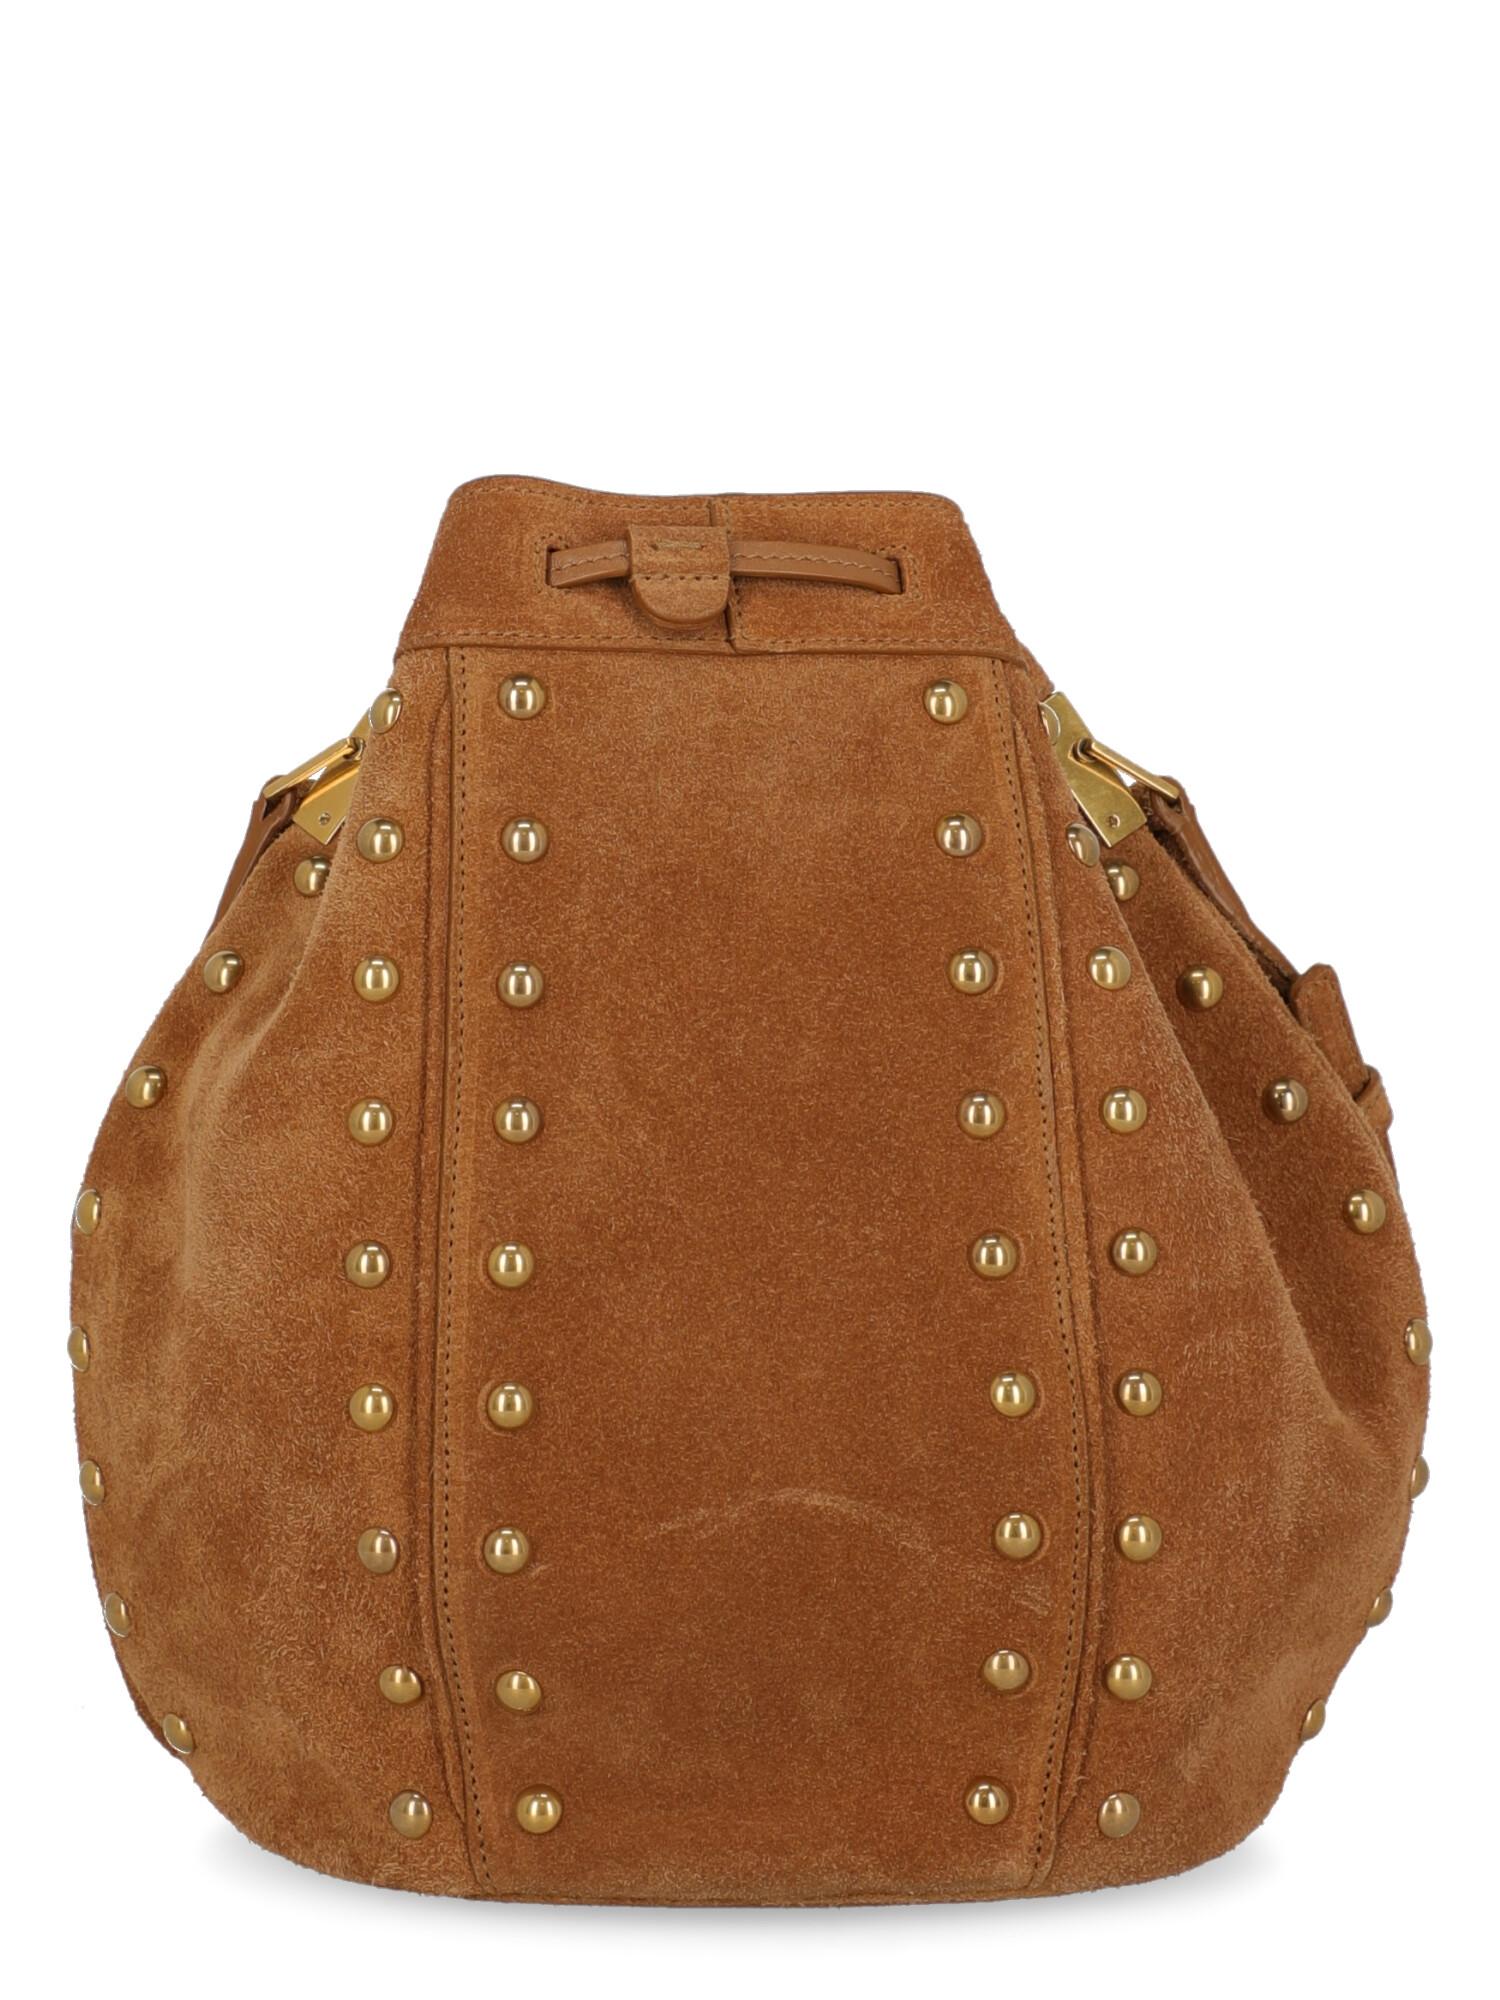 camel color leather handbag